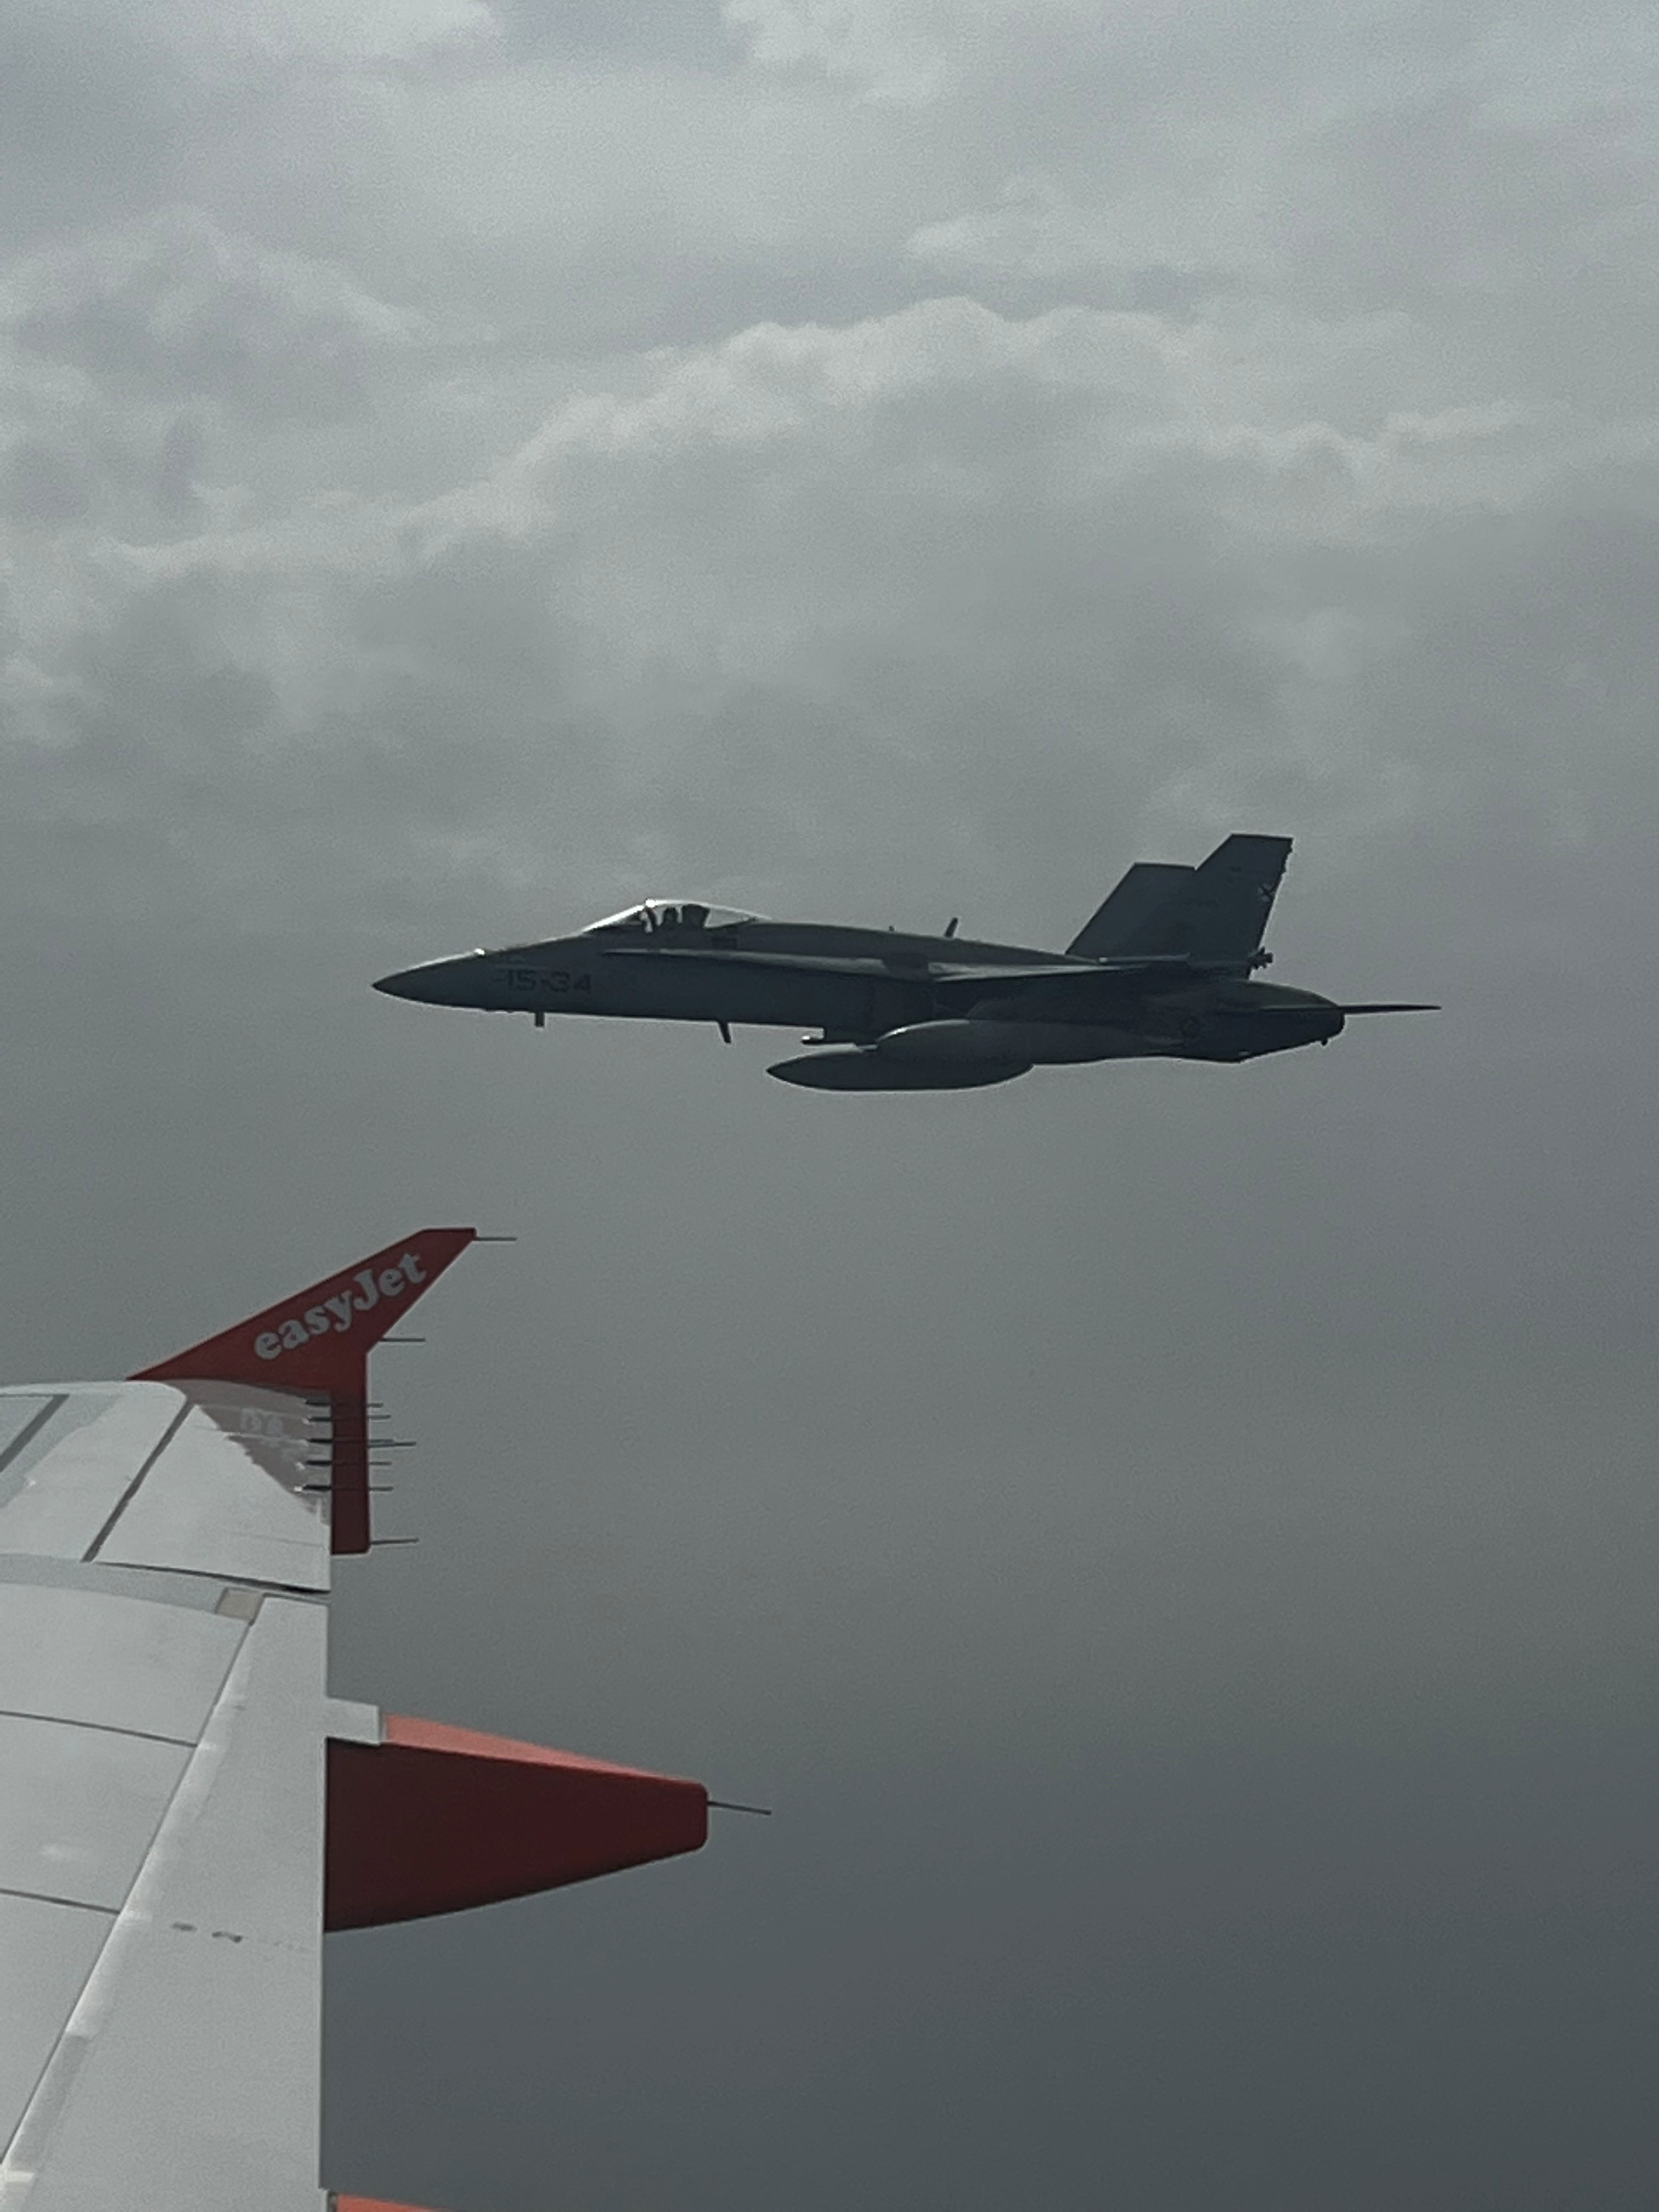 Un chasseur à réaction espagnol F-18 escorte un avion Easyjet après un canular à la bombe chez les adolescents